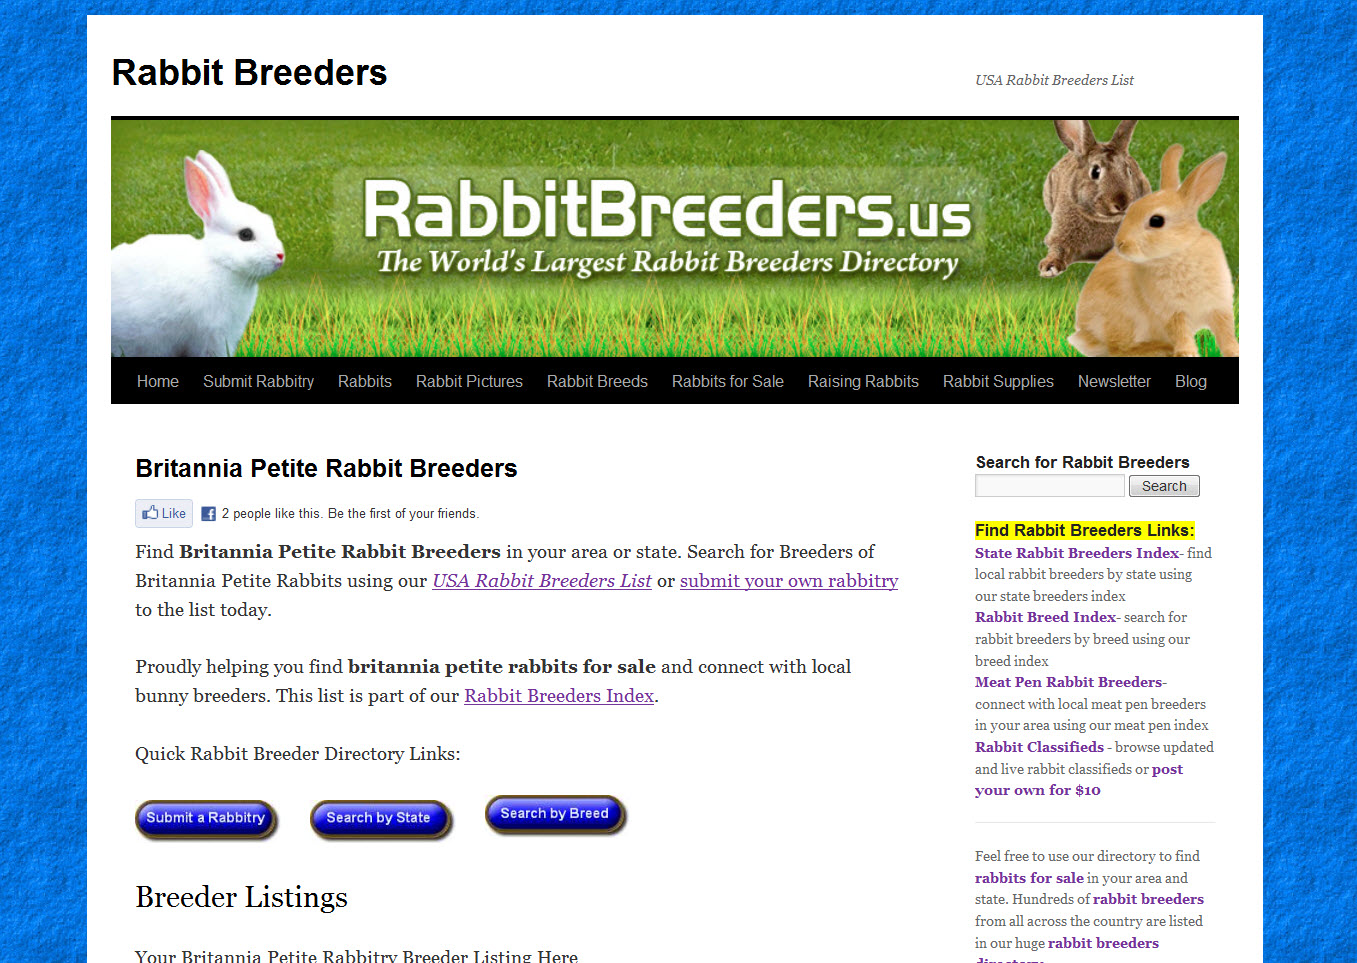 Britannia Petite Rabbit Breeders